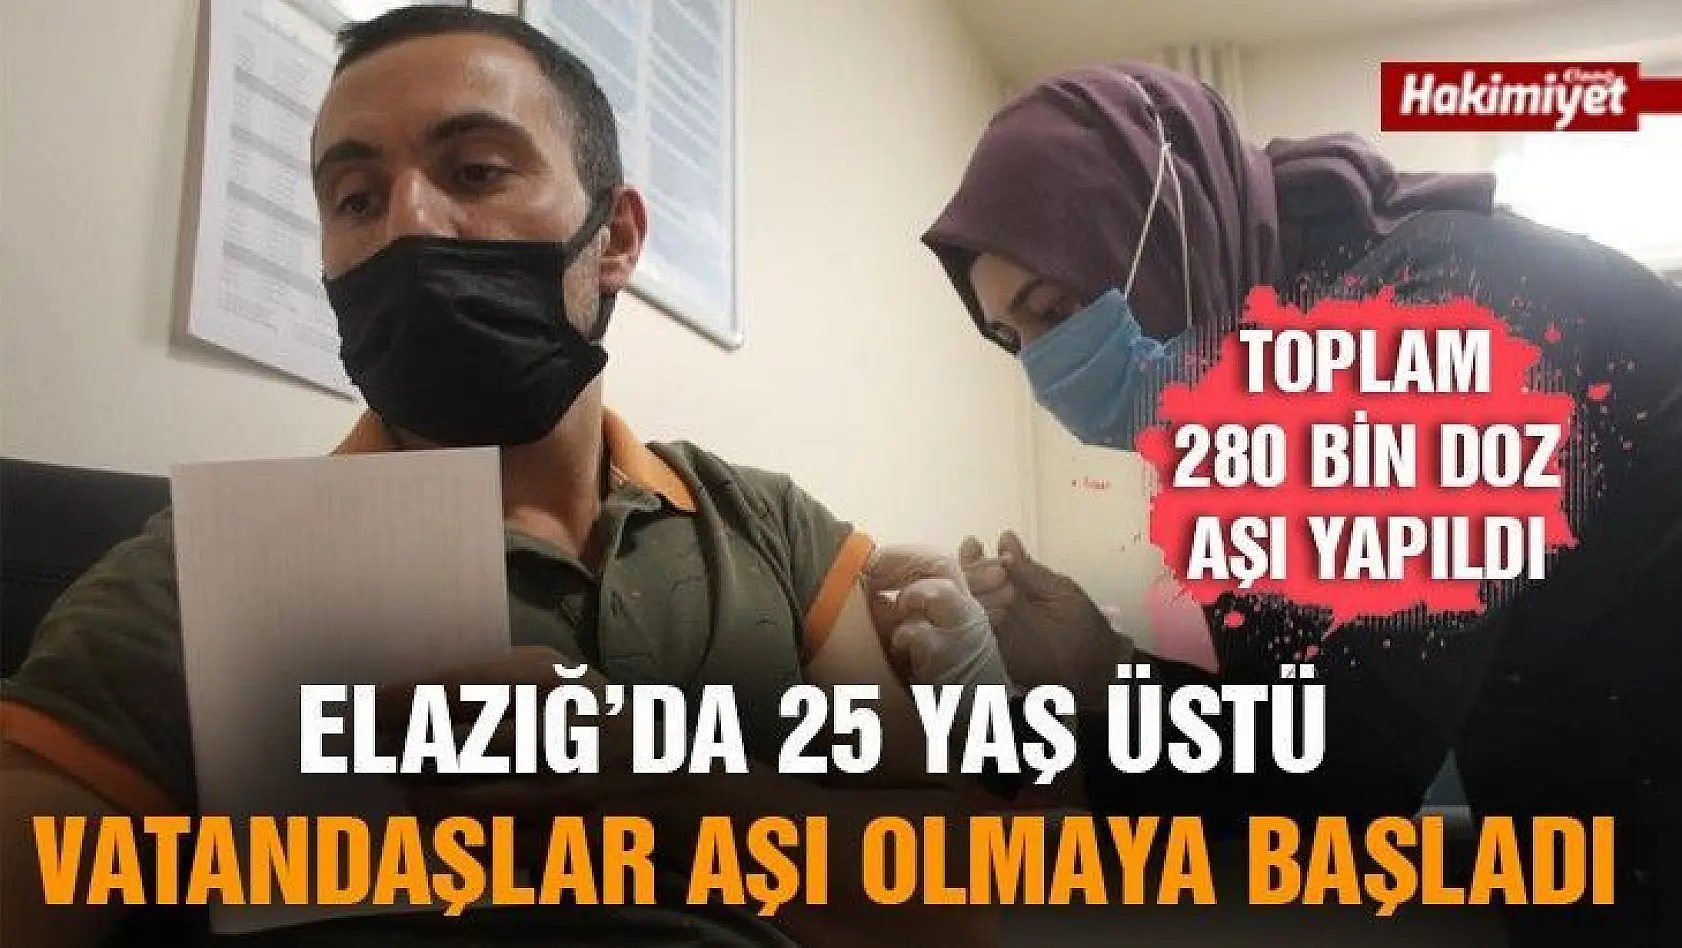 280 bin doz aşı yapılan Elazığ'da 25 yaş üstü vatandaşlar aşı olmaya başladı